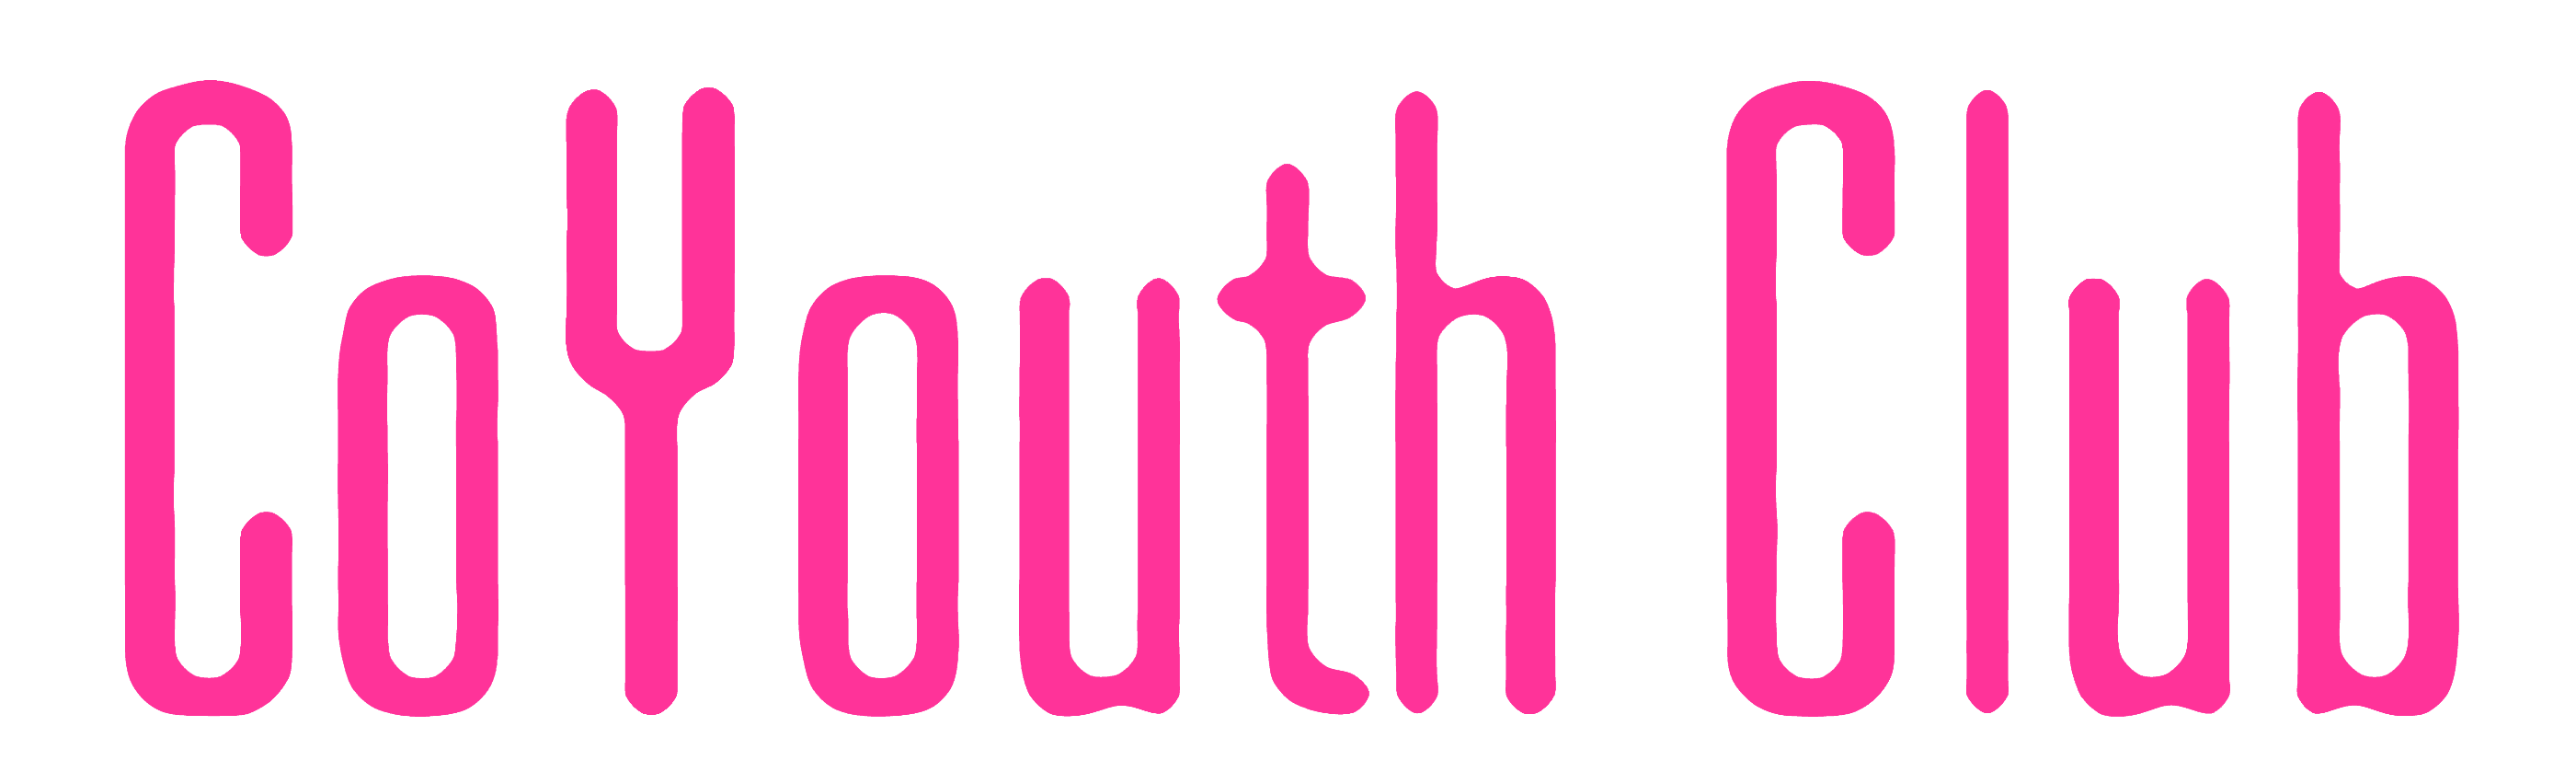 QDLUG | CoYouth Club logo